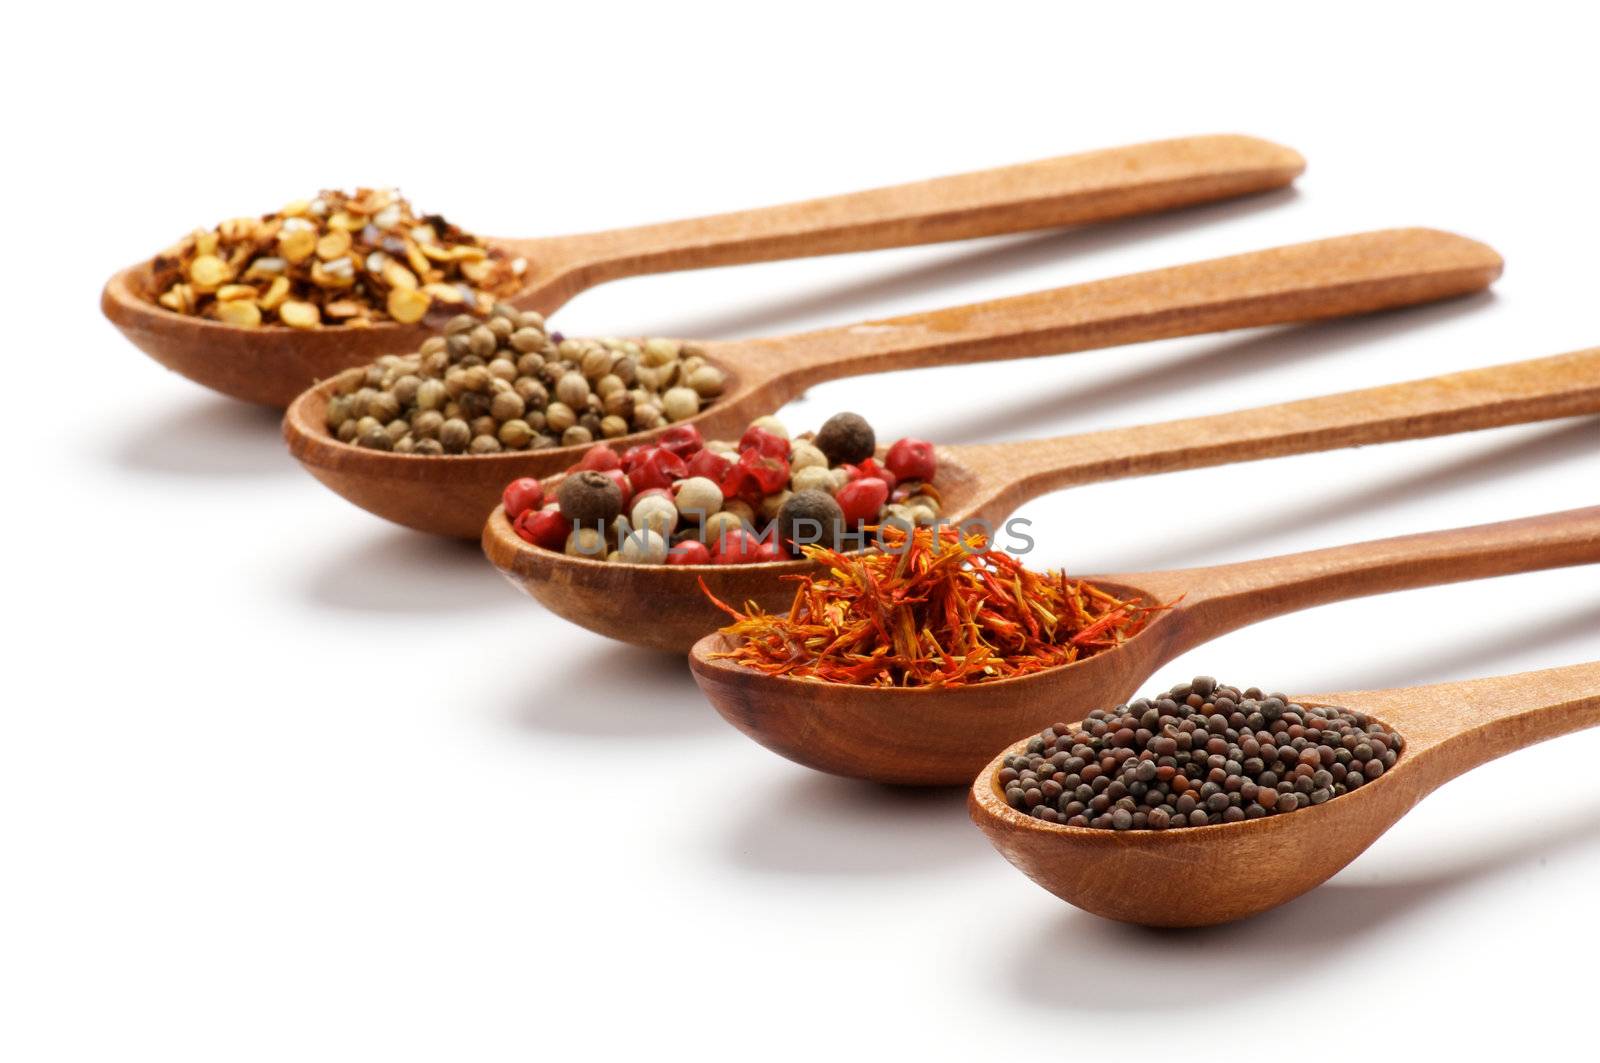 Spices in Spoon by zhekos